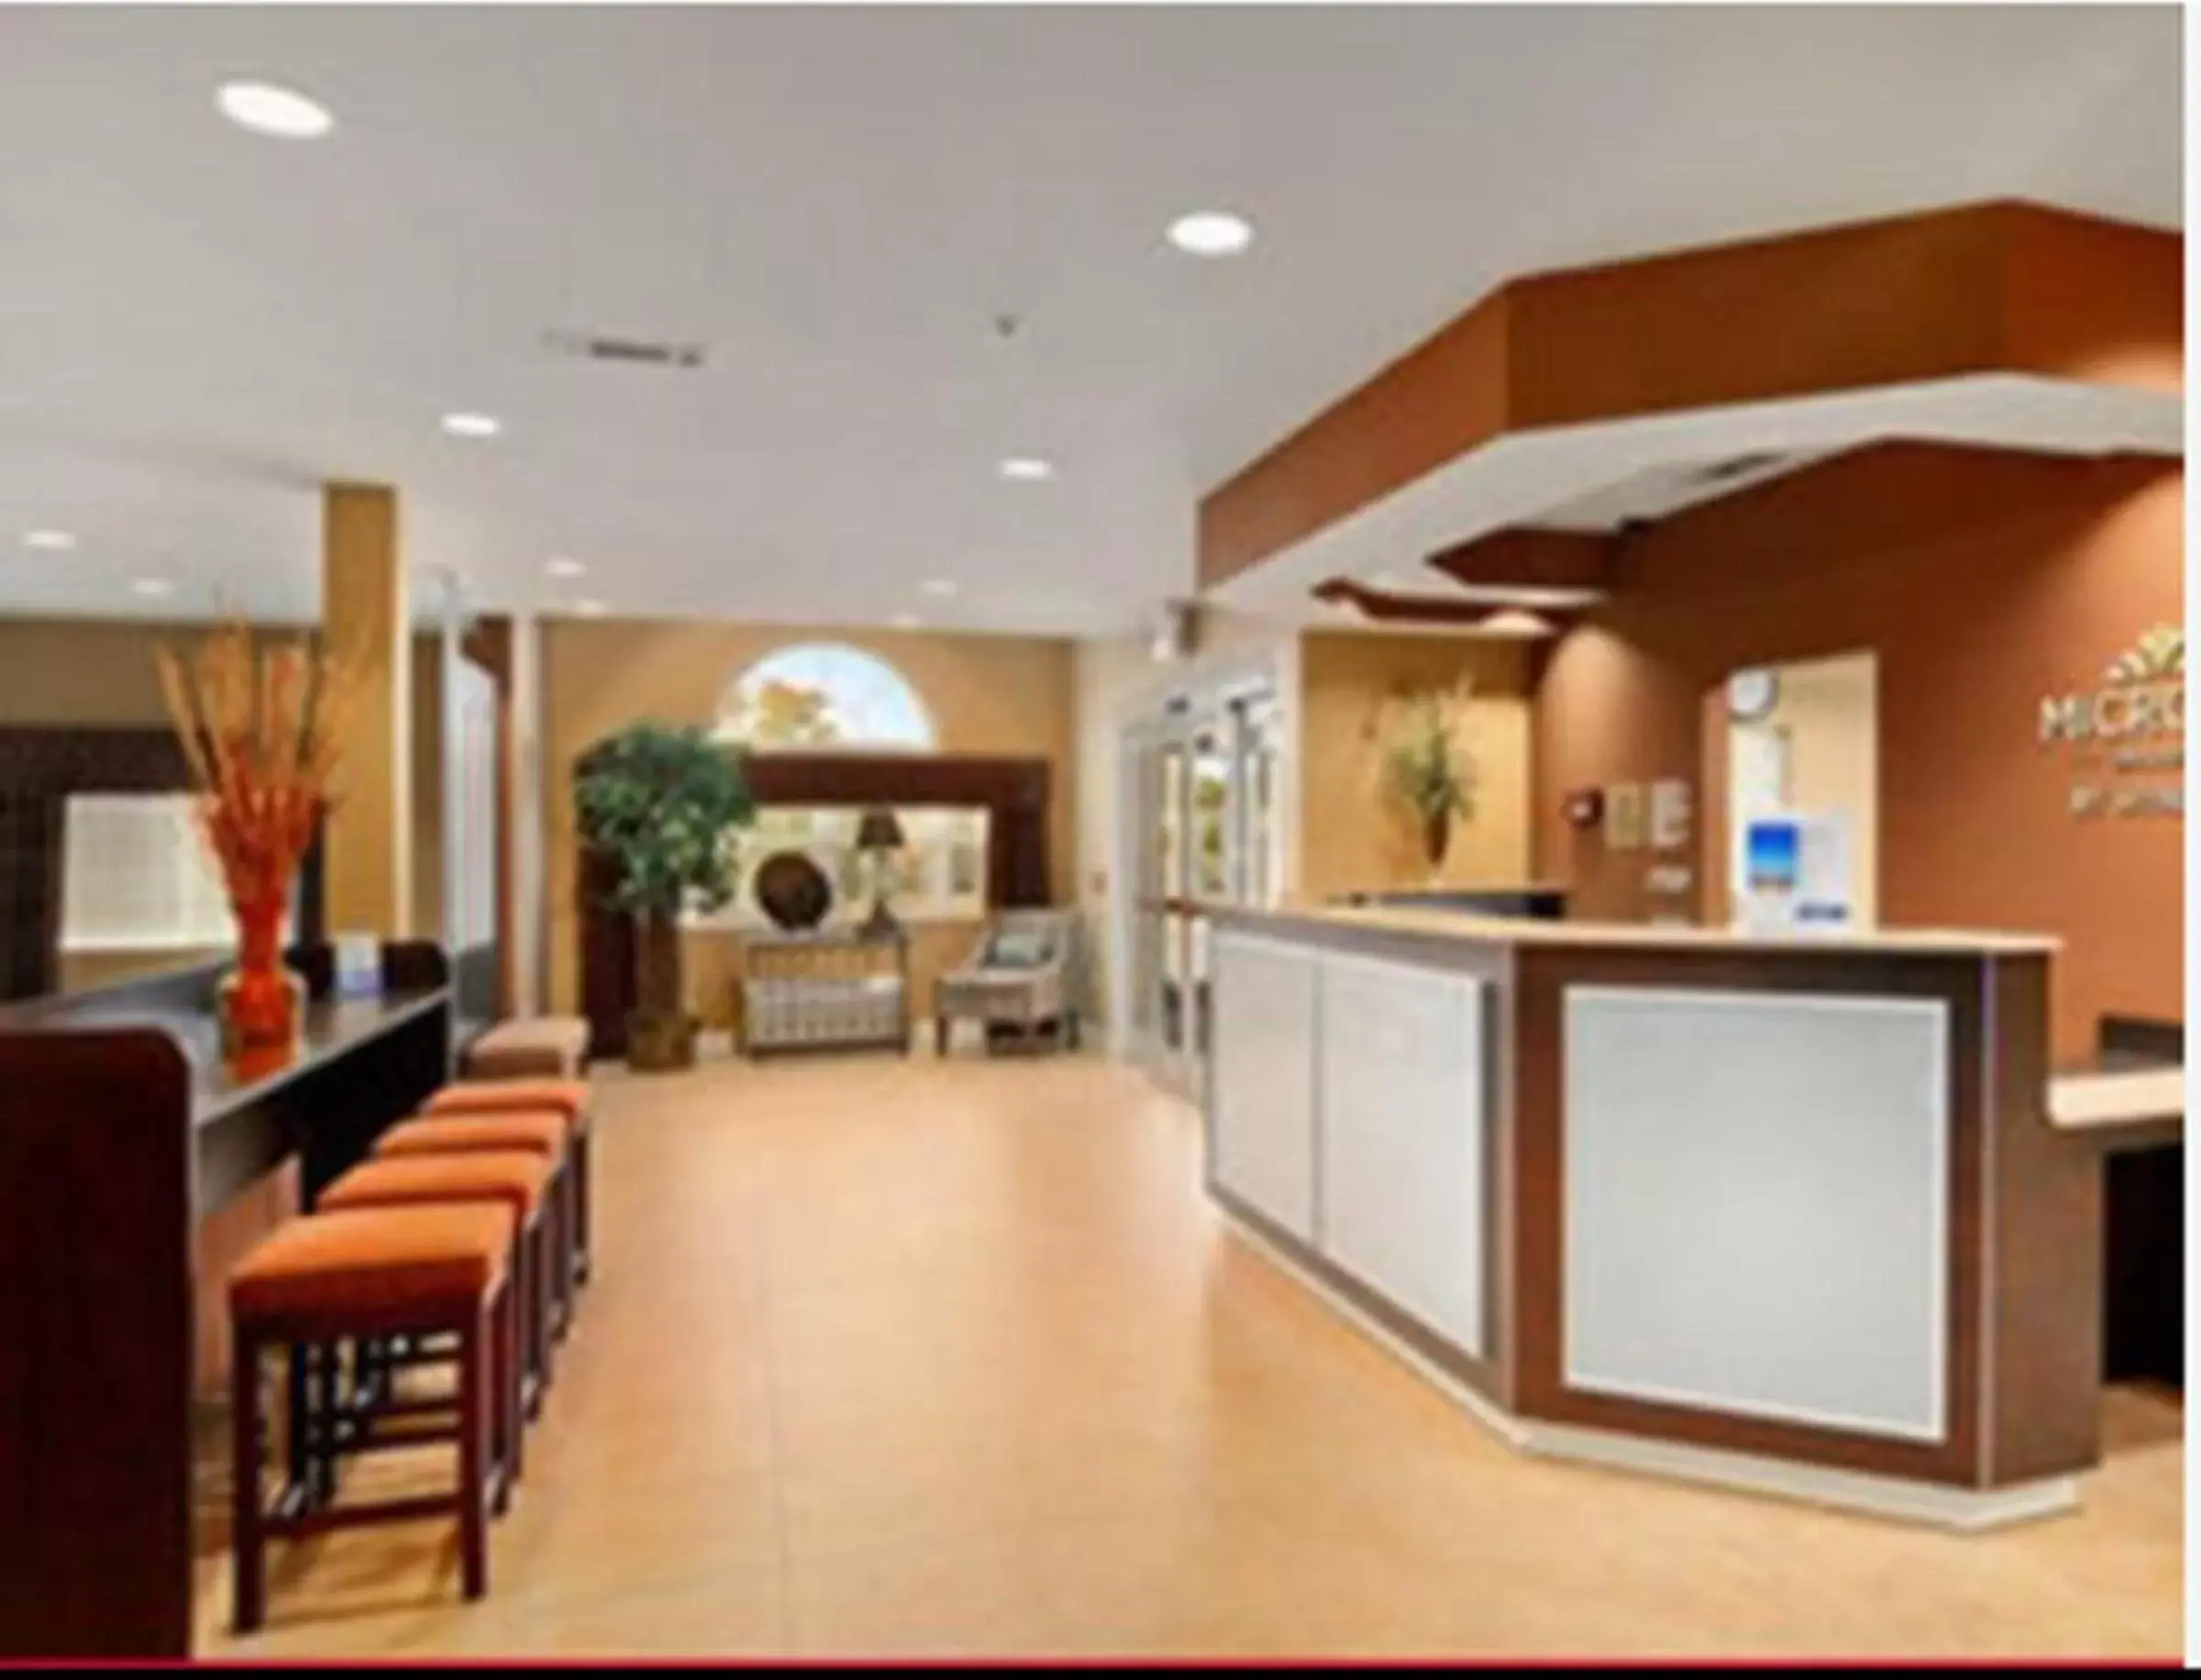 Lobby or reception, Lobby/Reception in Microtel Inn & Suites by Wyndham Ozark